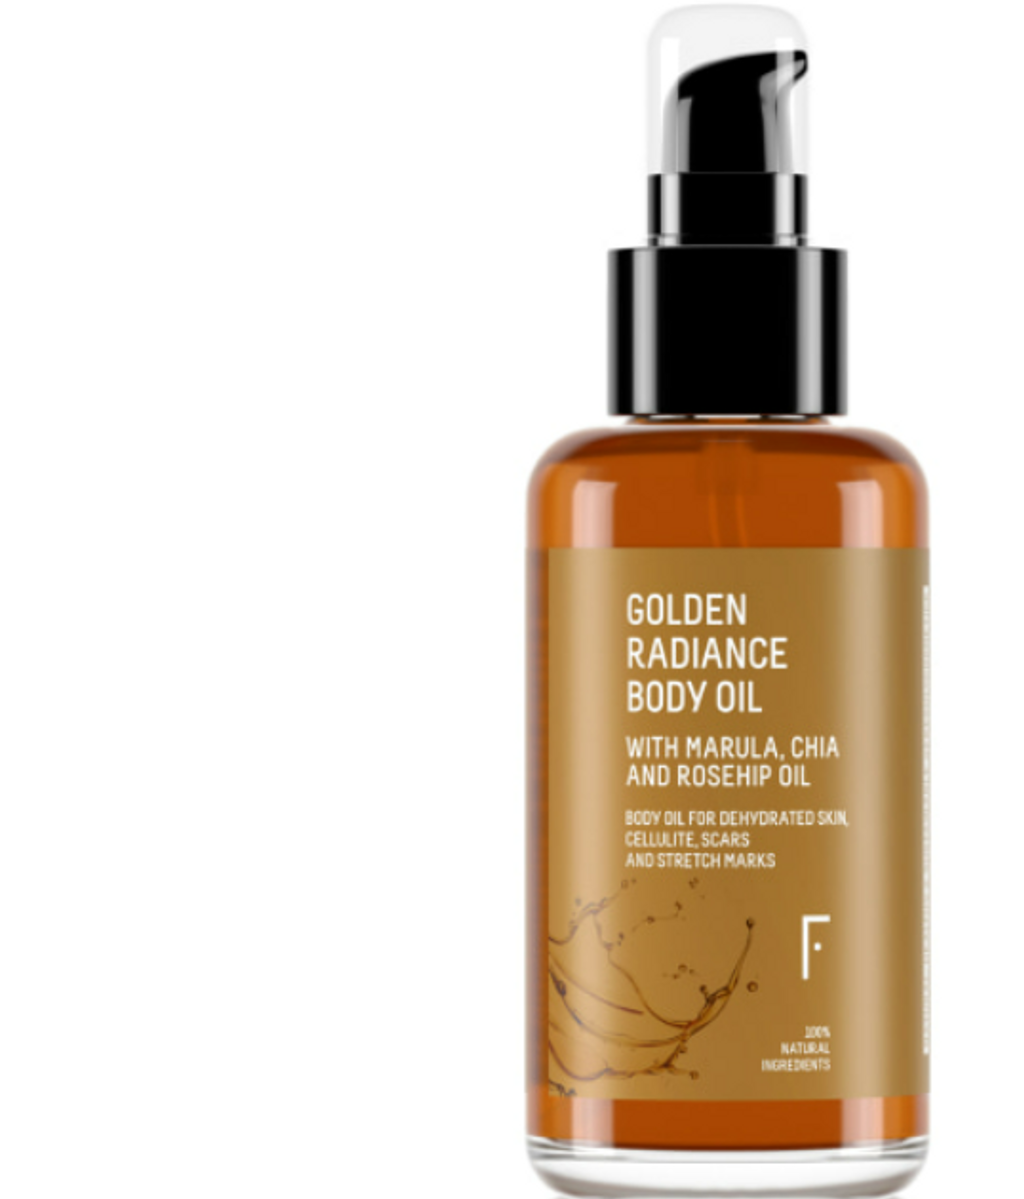 Golden Radiance Body Oil de Freshly